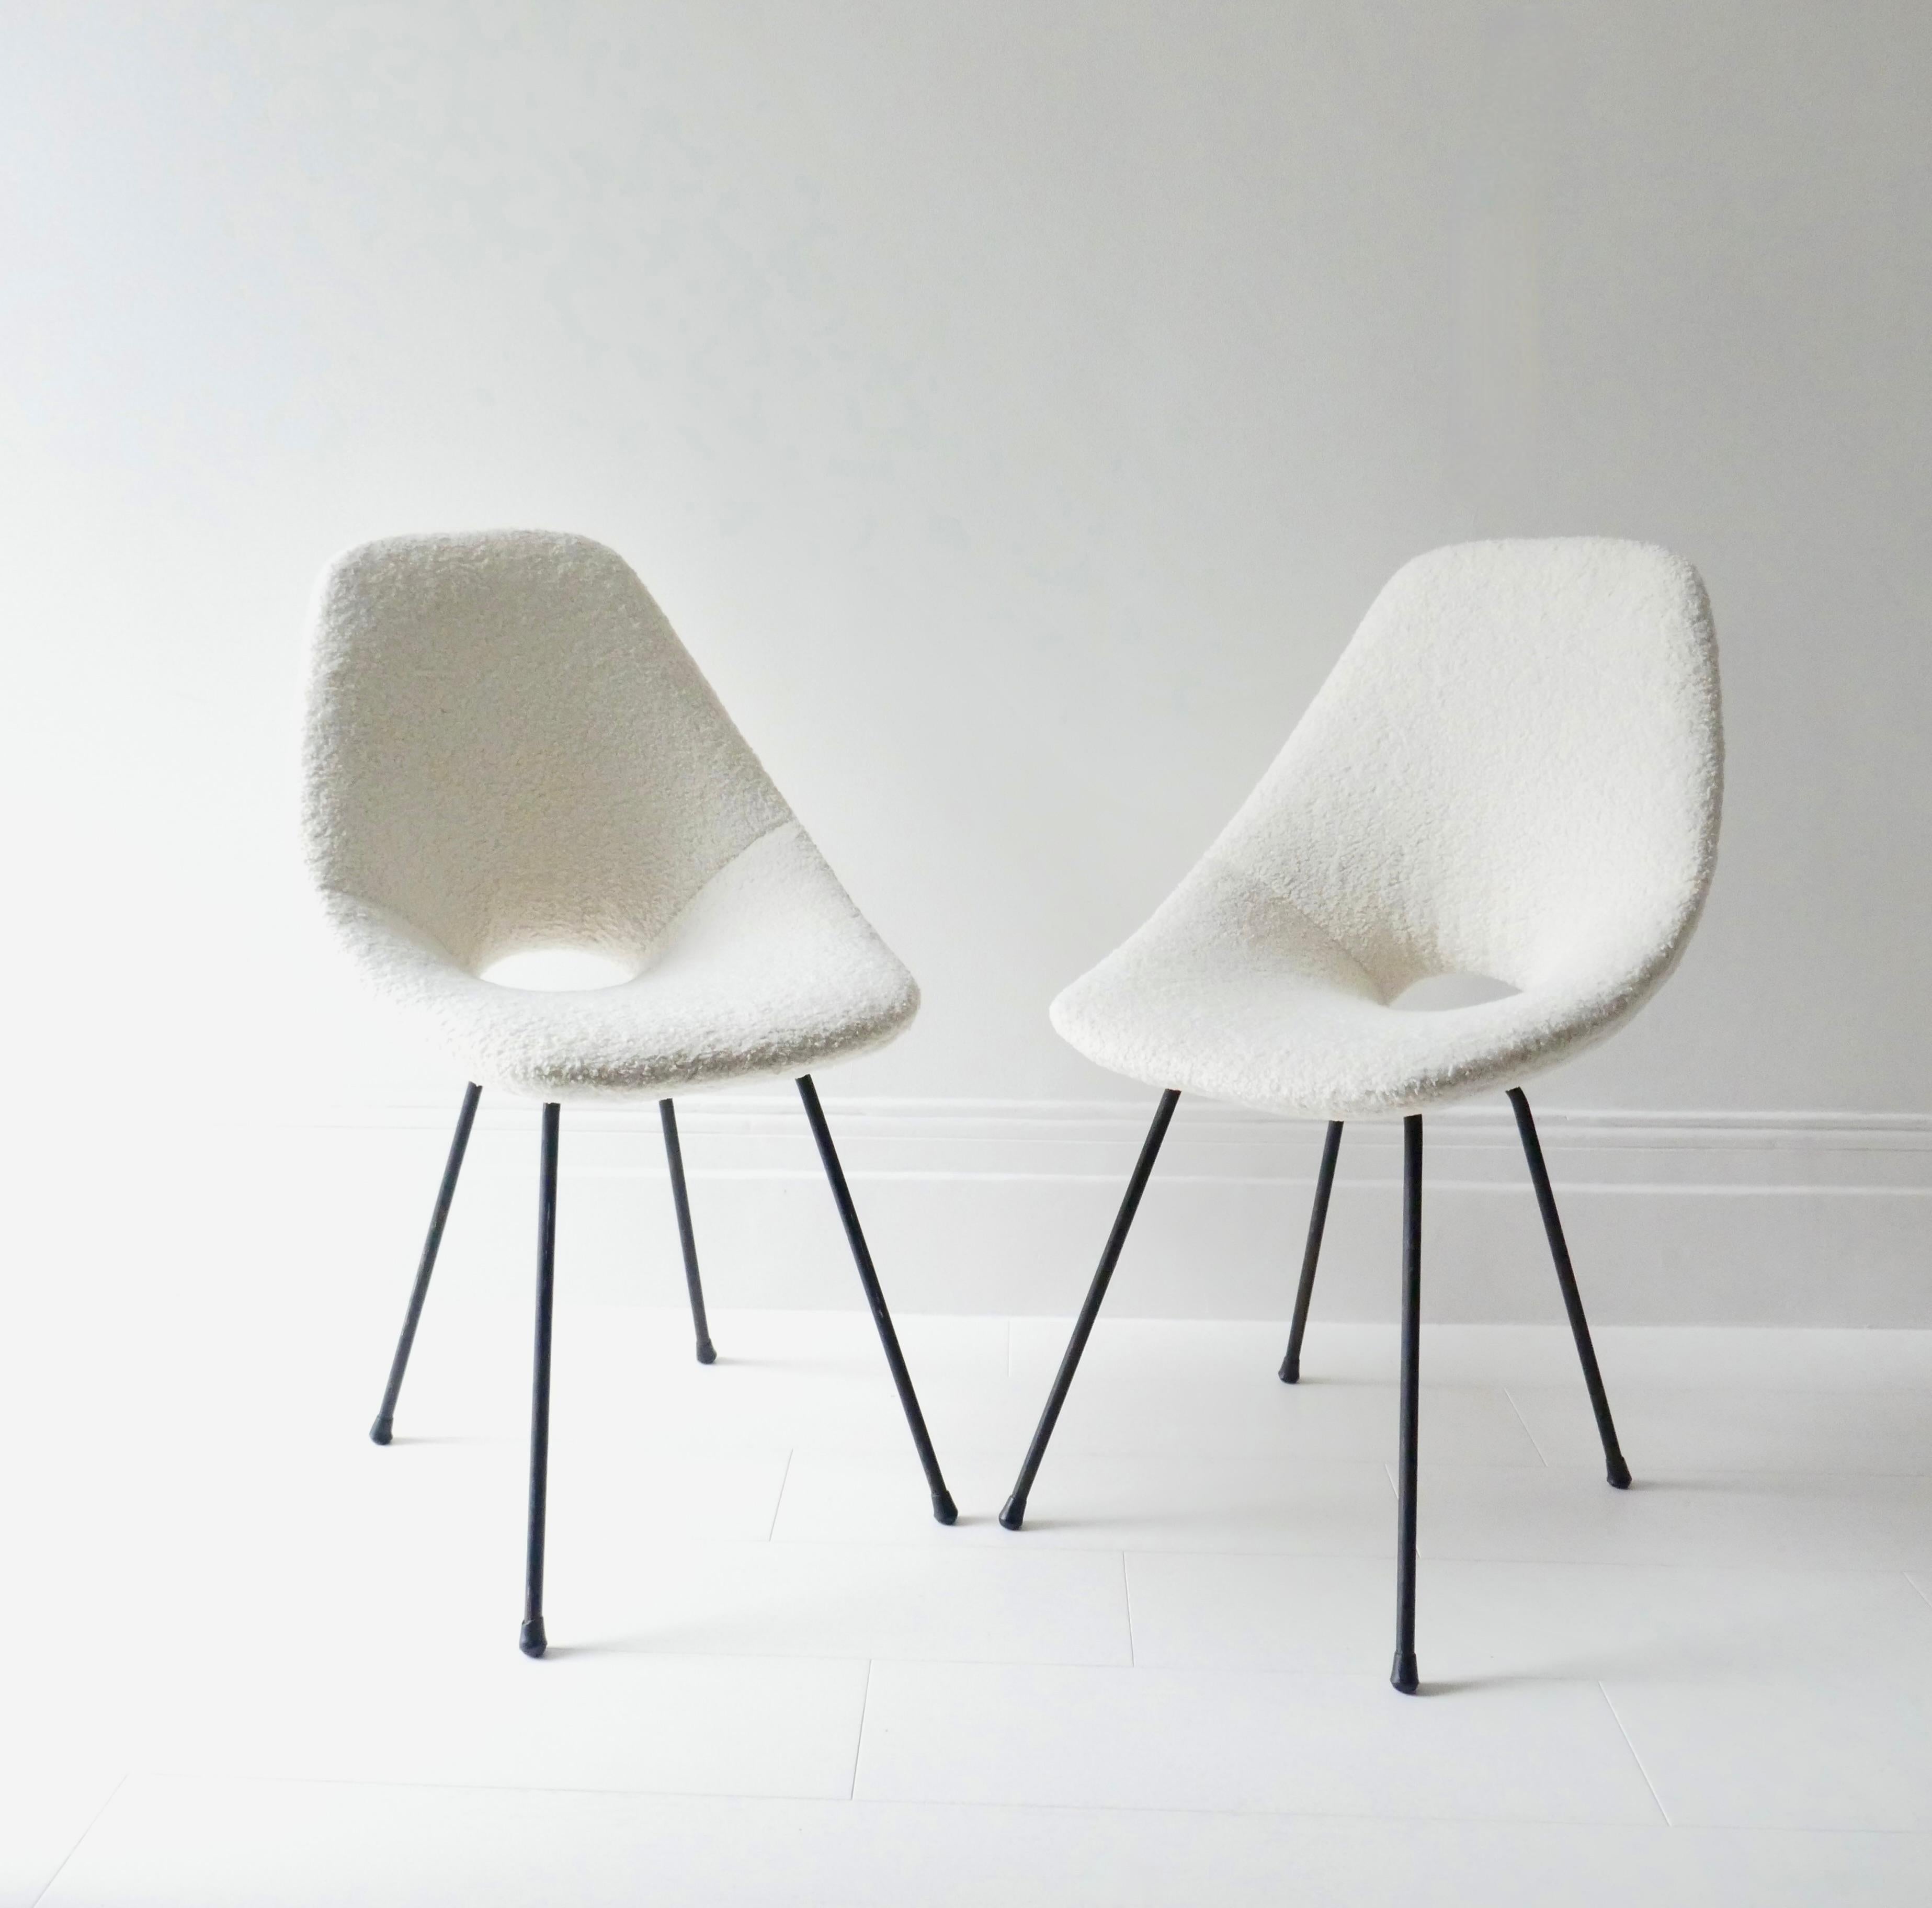 Paire de chaises iconiques Medea conçues en 1955 par Vittorio Nobili pour Fratelli Tagliabue, Meda 1950 et lauréate du Compasso D'Oro à la biennale de design industriel de Milan l'année suivante (1956). 
Les chaises ont été retapissées dans un tissu